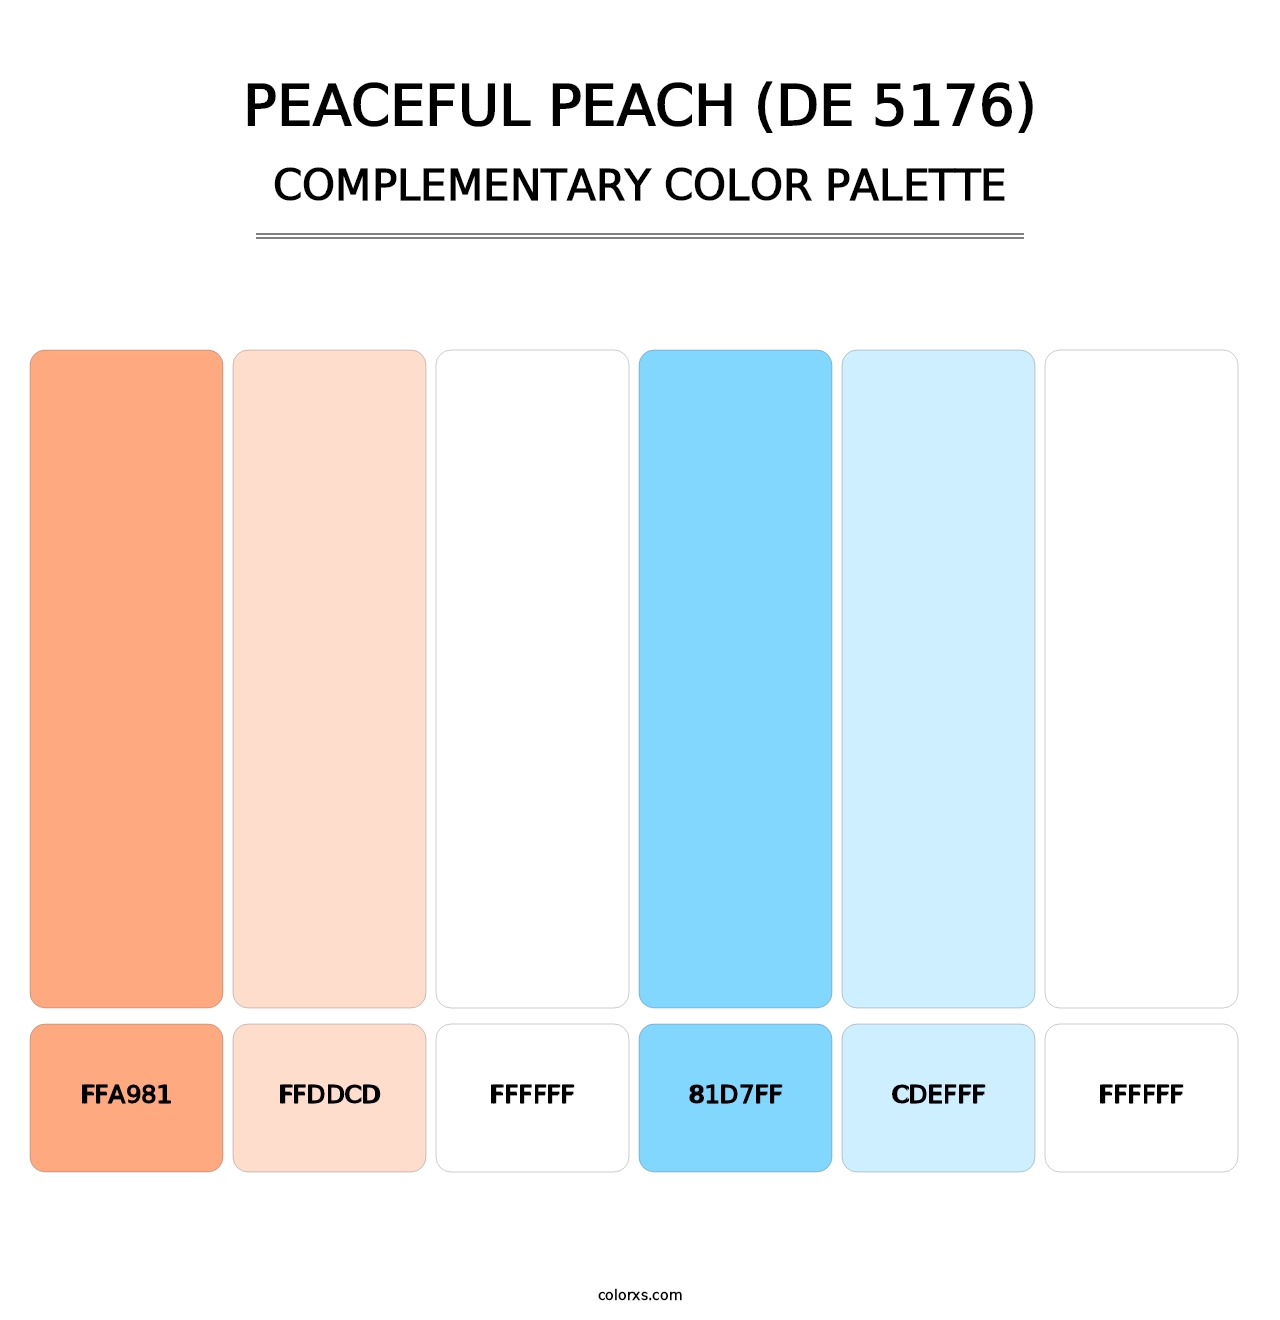 Peaceful Peach (DE 5176) - Complementary Color Palette